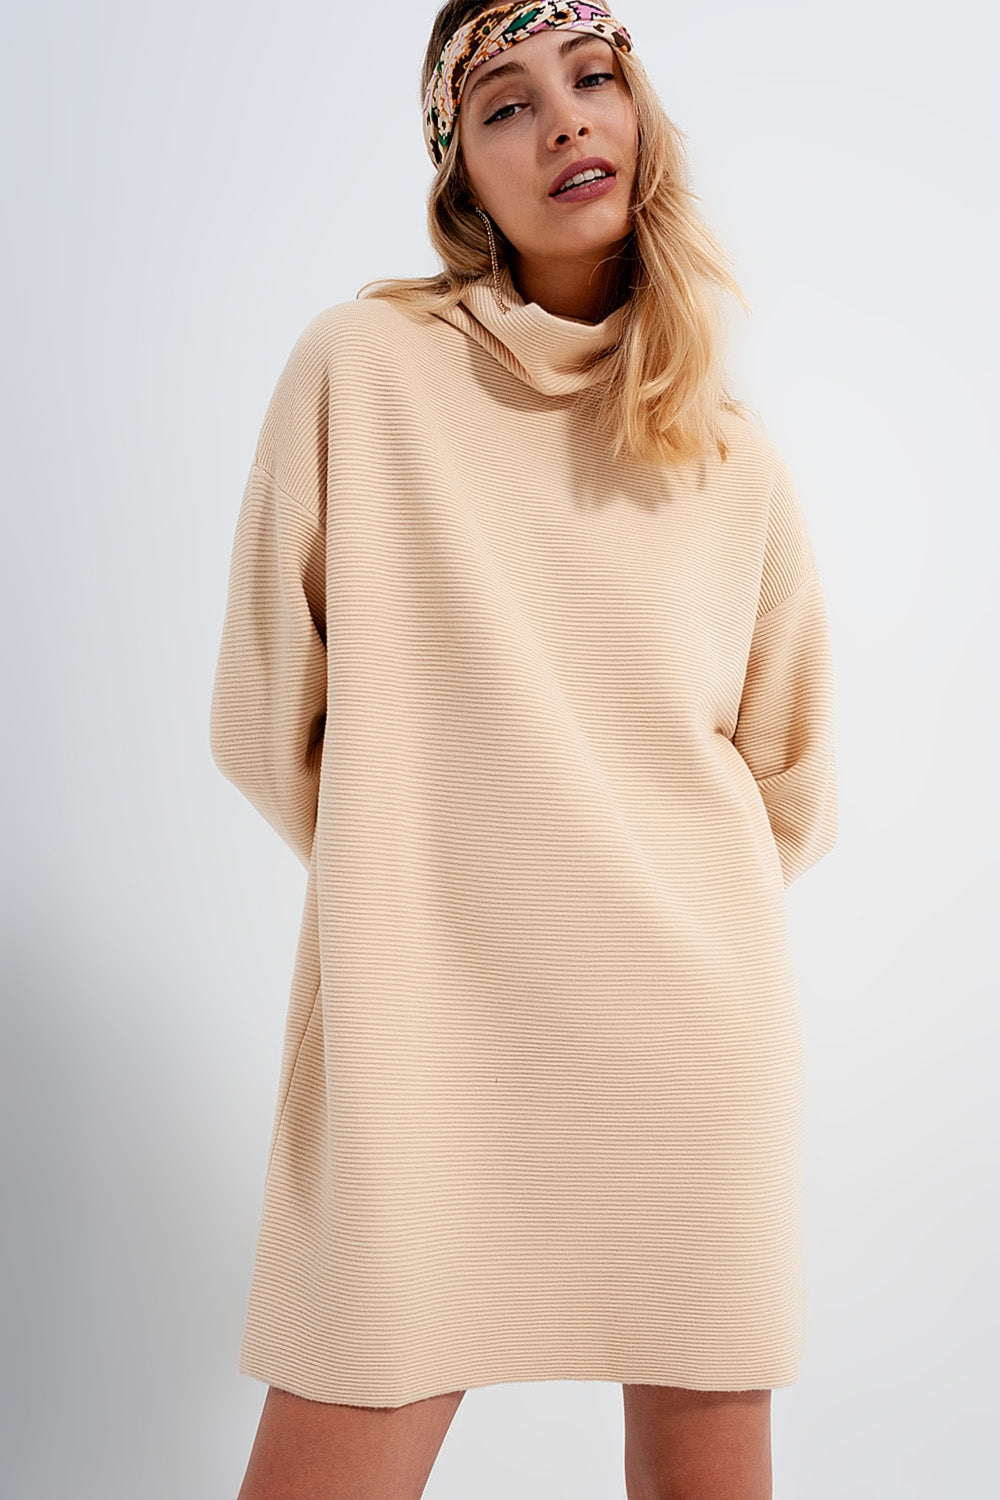 High neck mini jumper dress in beige - Szua Store